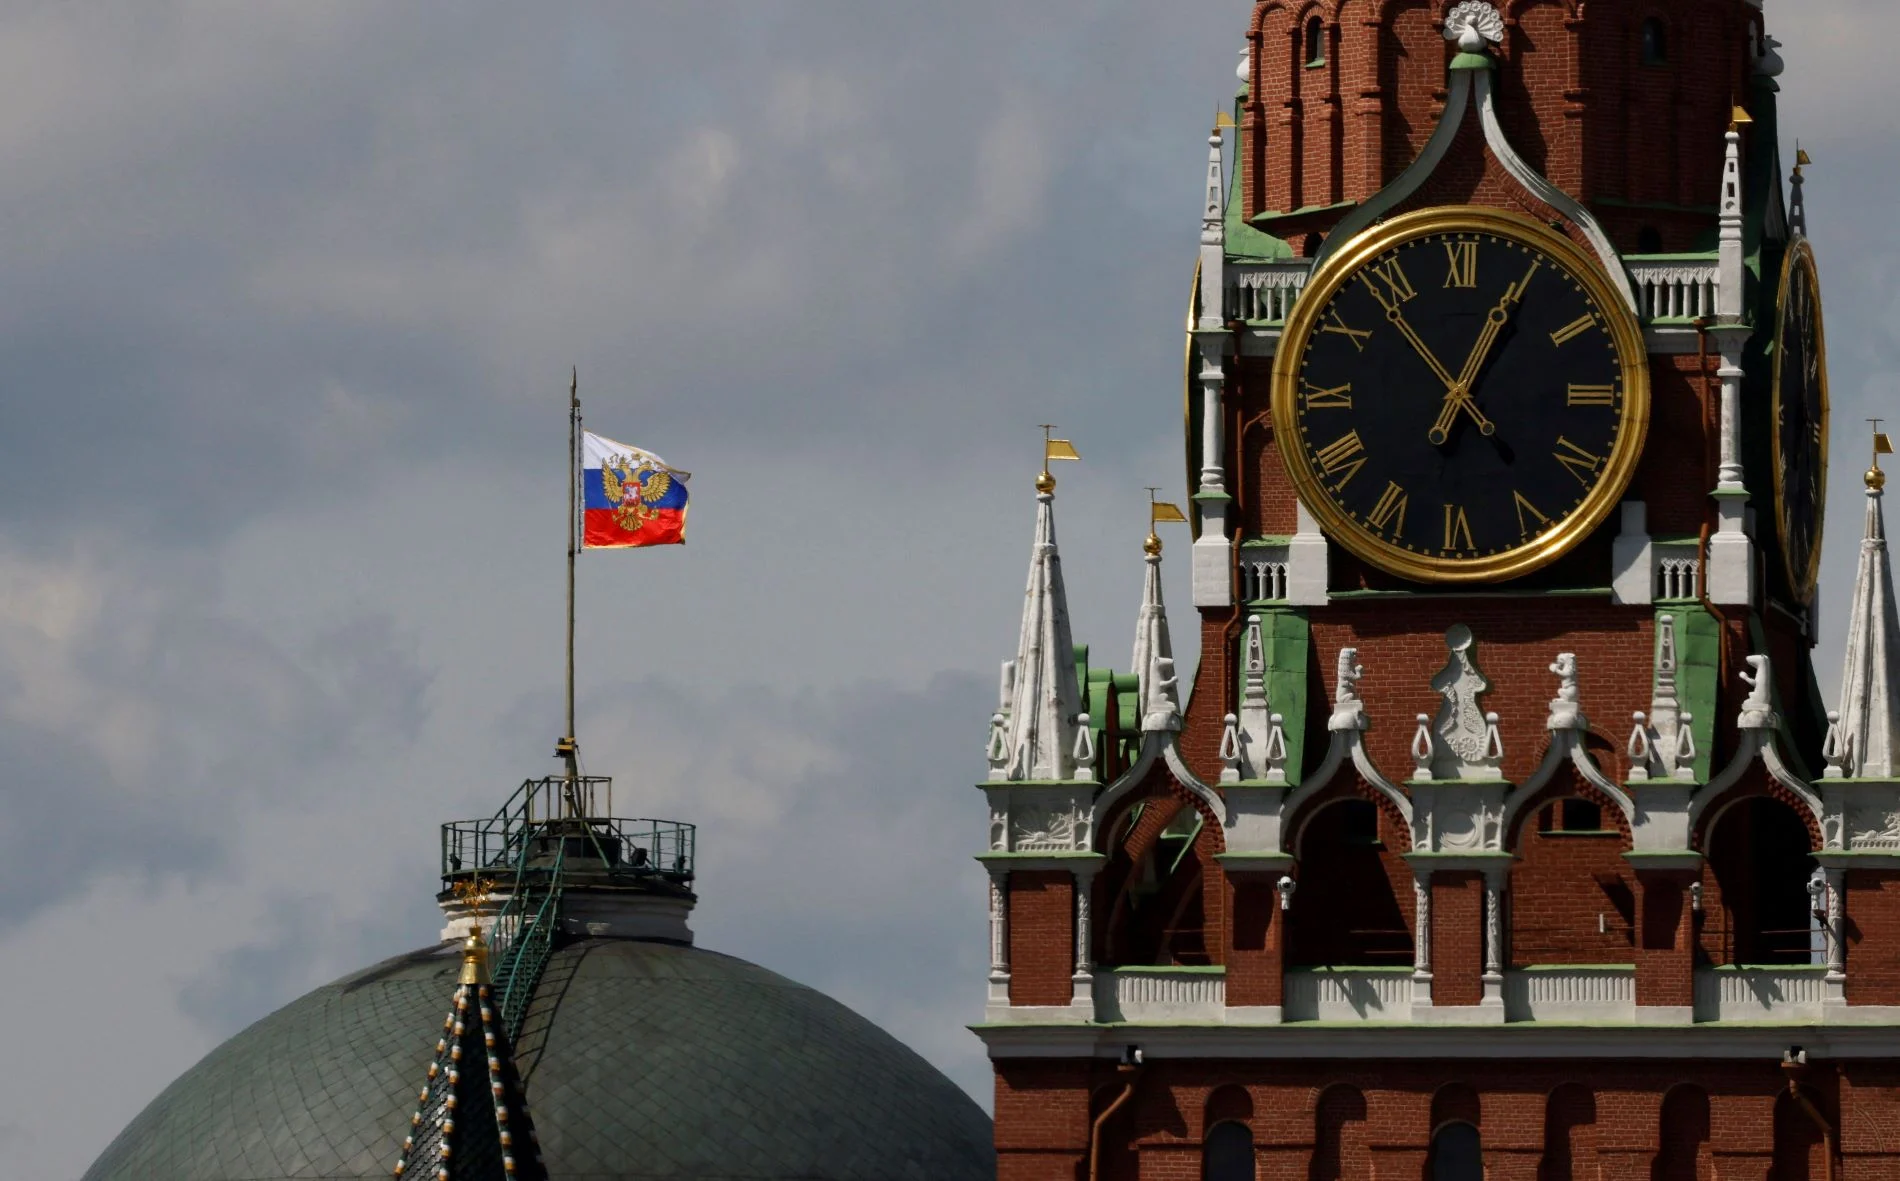 Κρεμλίνο: Απορρίπτει την προειδοποίηση των ΗΠΑ για πυρηνικές δυνατότητες στο Διάστημα